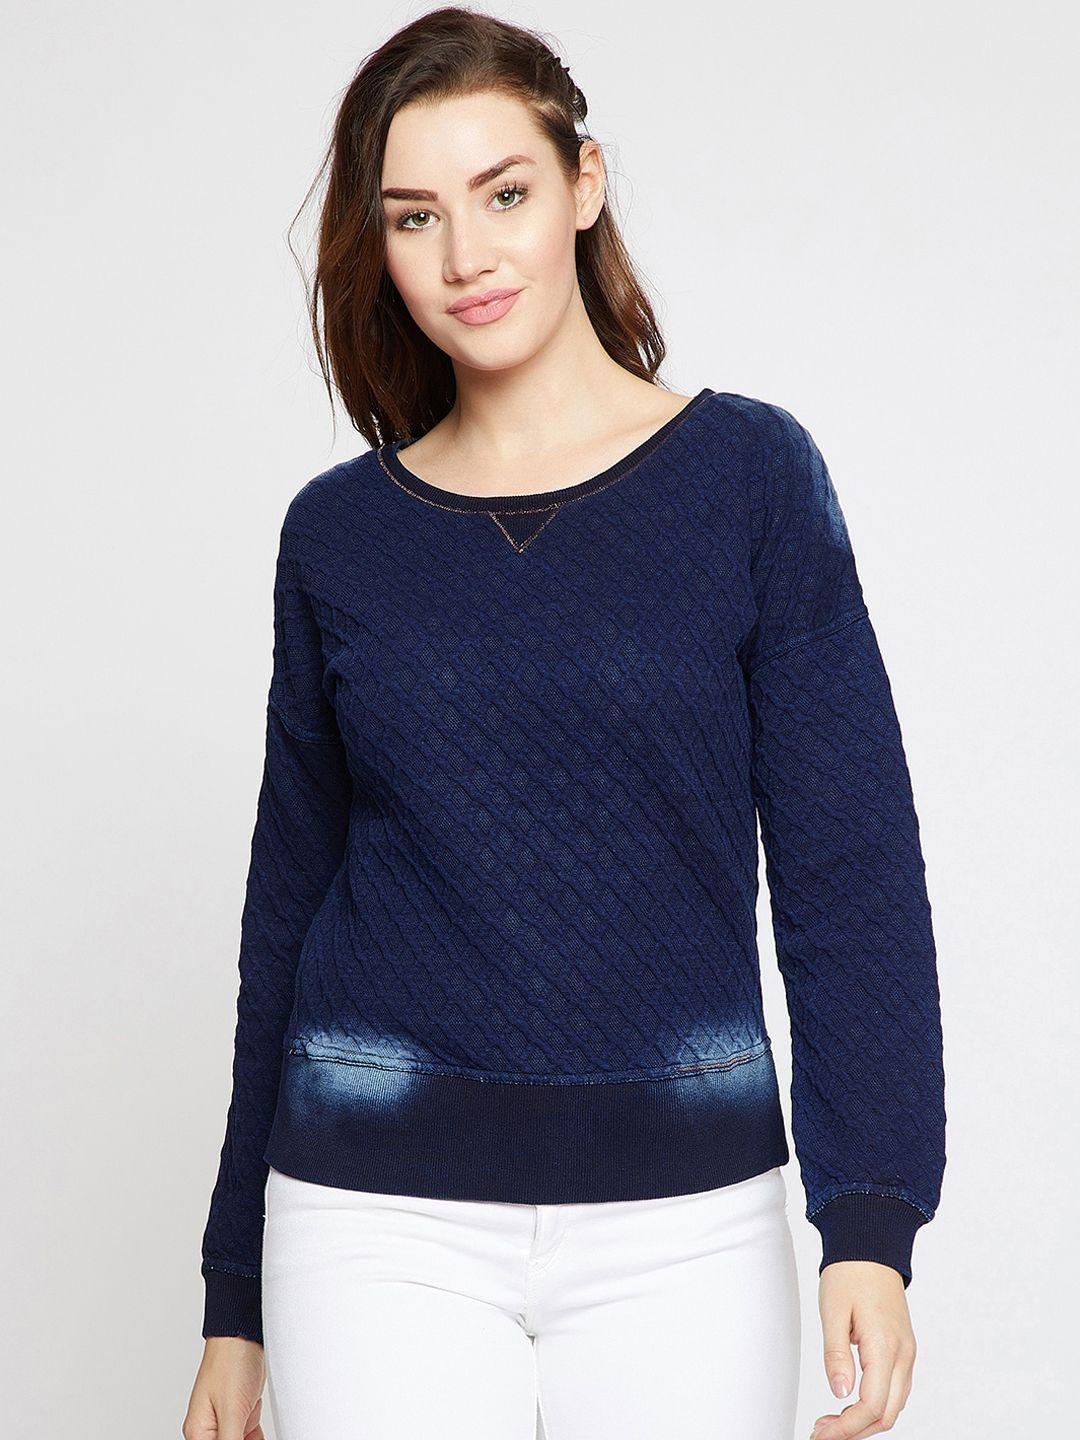 carlton london women blue solid sweatshirt